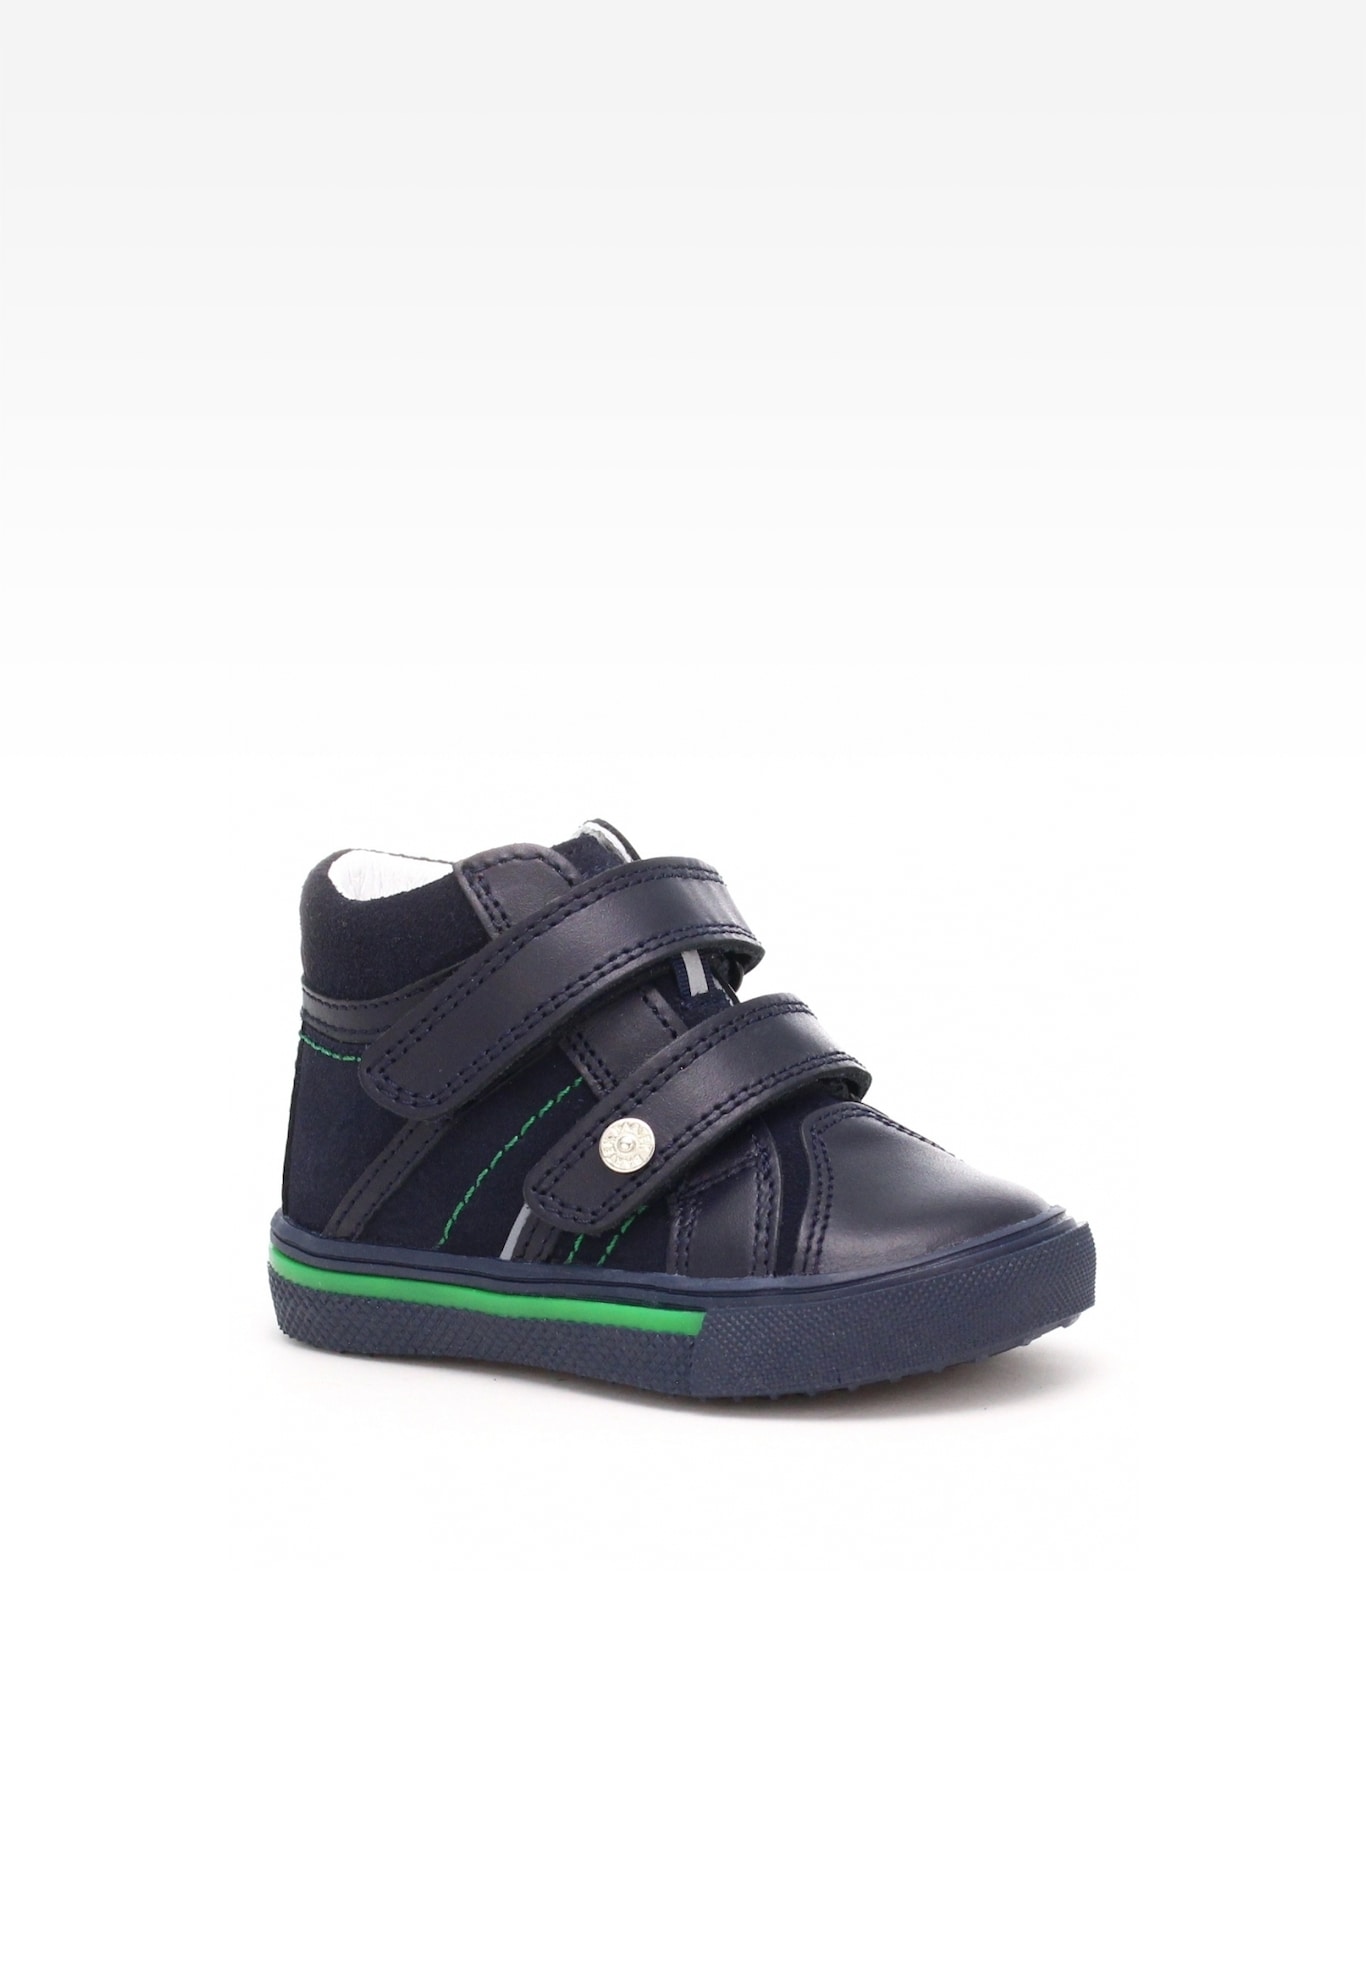 Sneakers BARTEK W-011812-0/OC7 II, dla chłopców, czarny